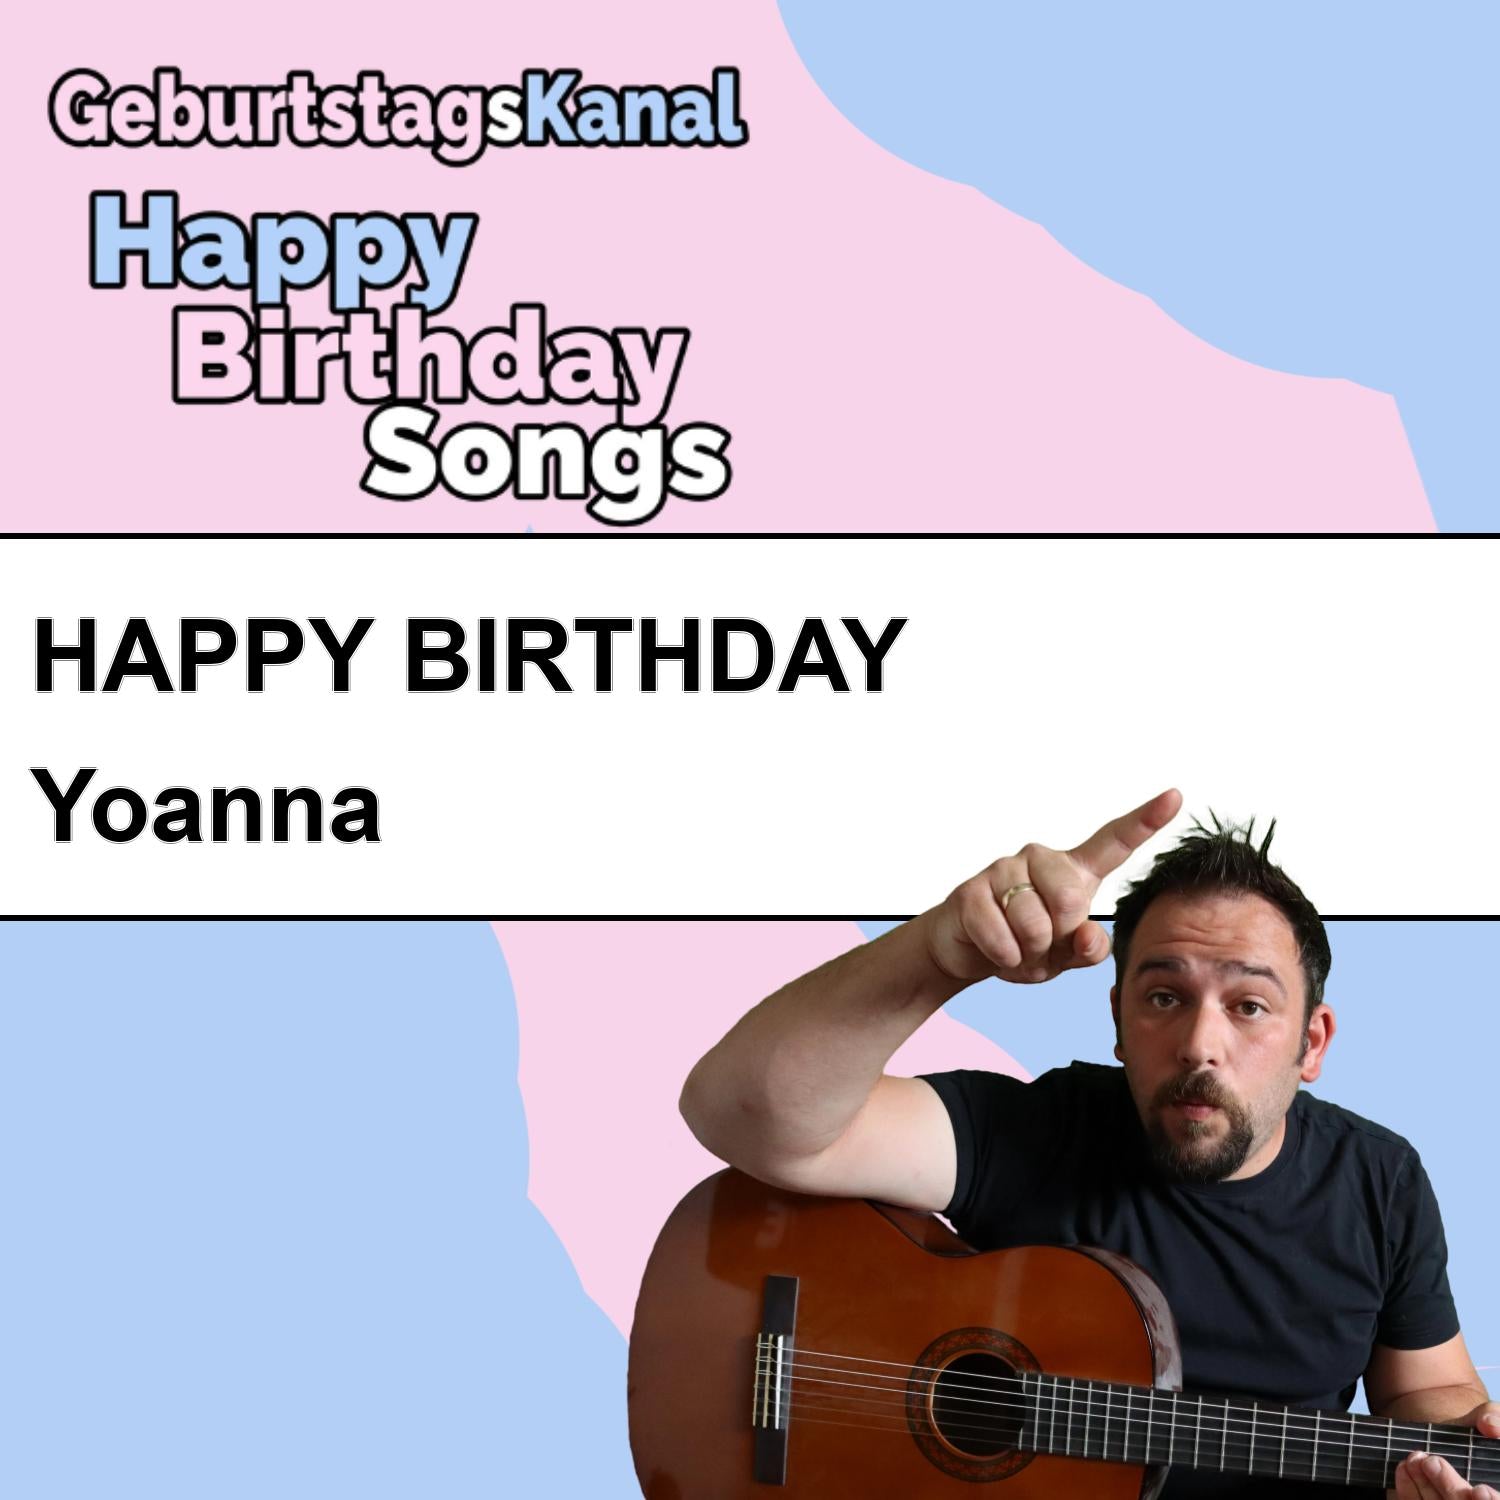 Produktbild Happy Birthday to you Yoanna mit Wunschgrußbotschaft